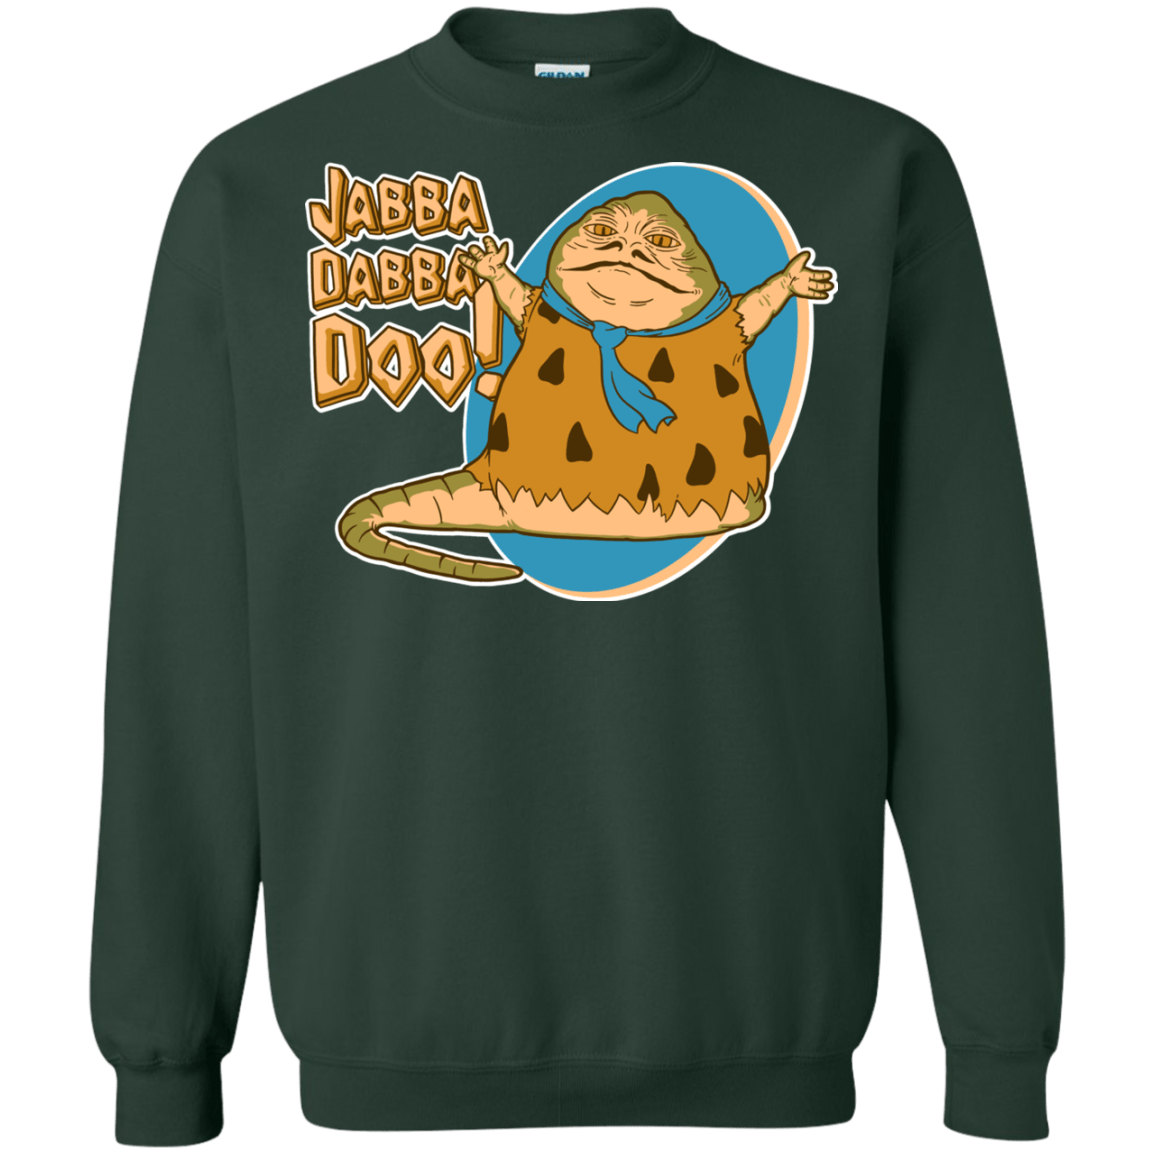 Sweatshirts Forest Green / S Jabba Dabba Doo Crewneck Sweatshirt